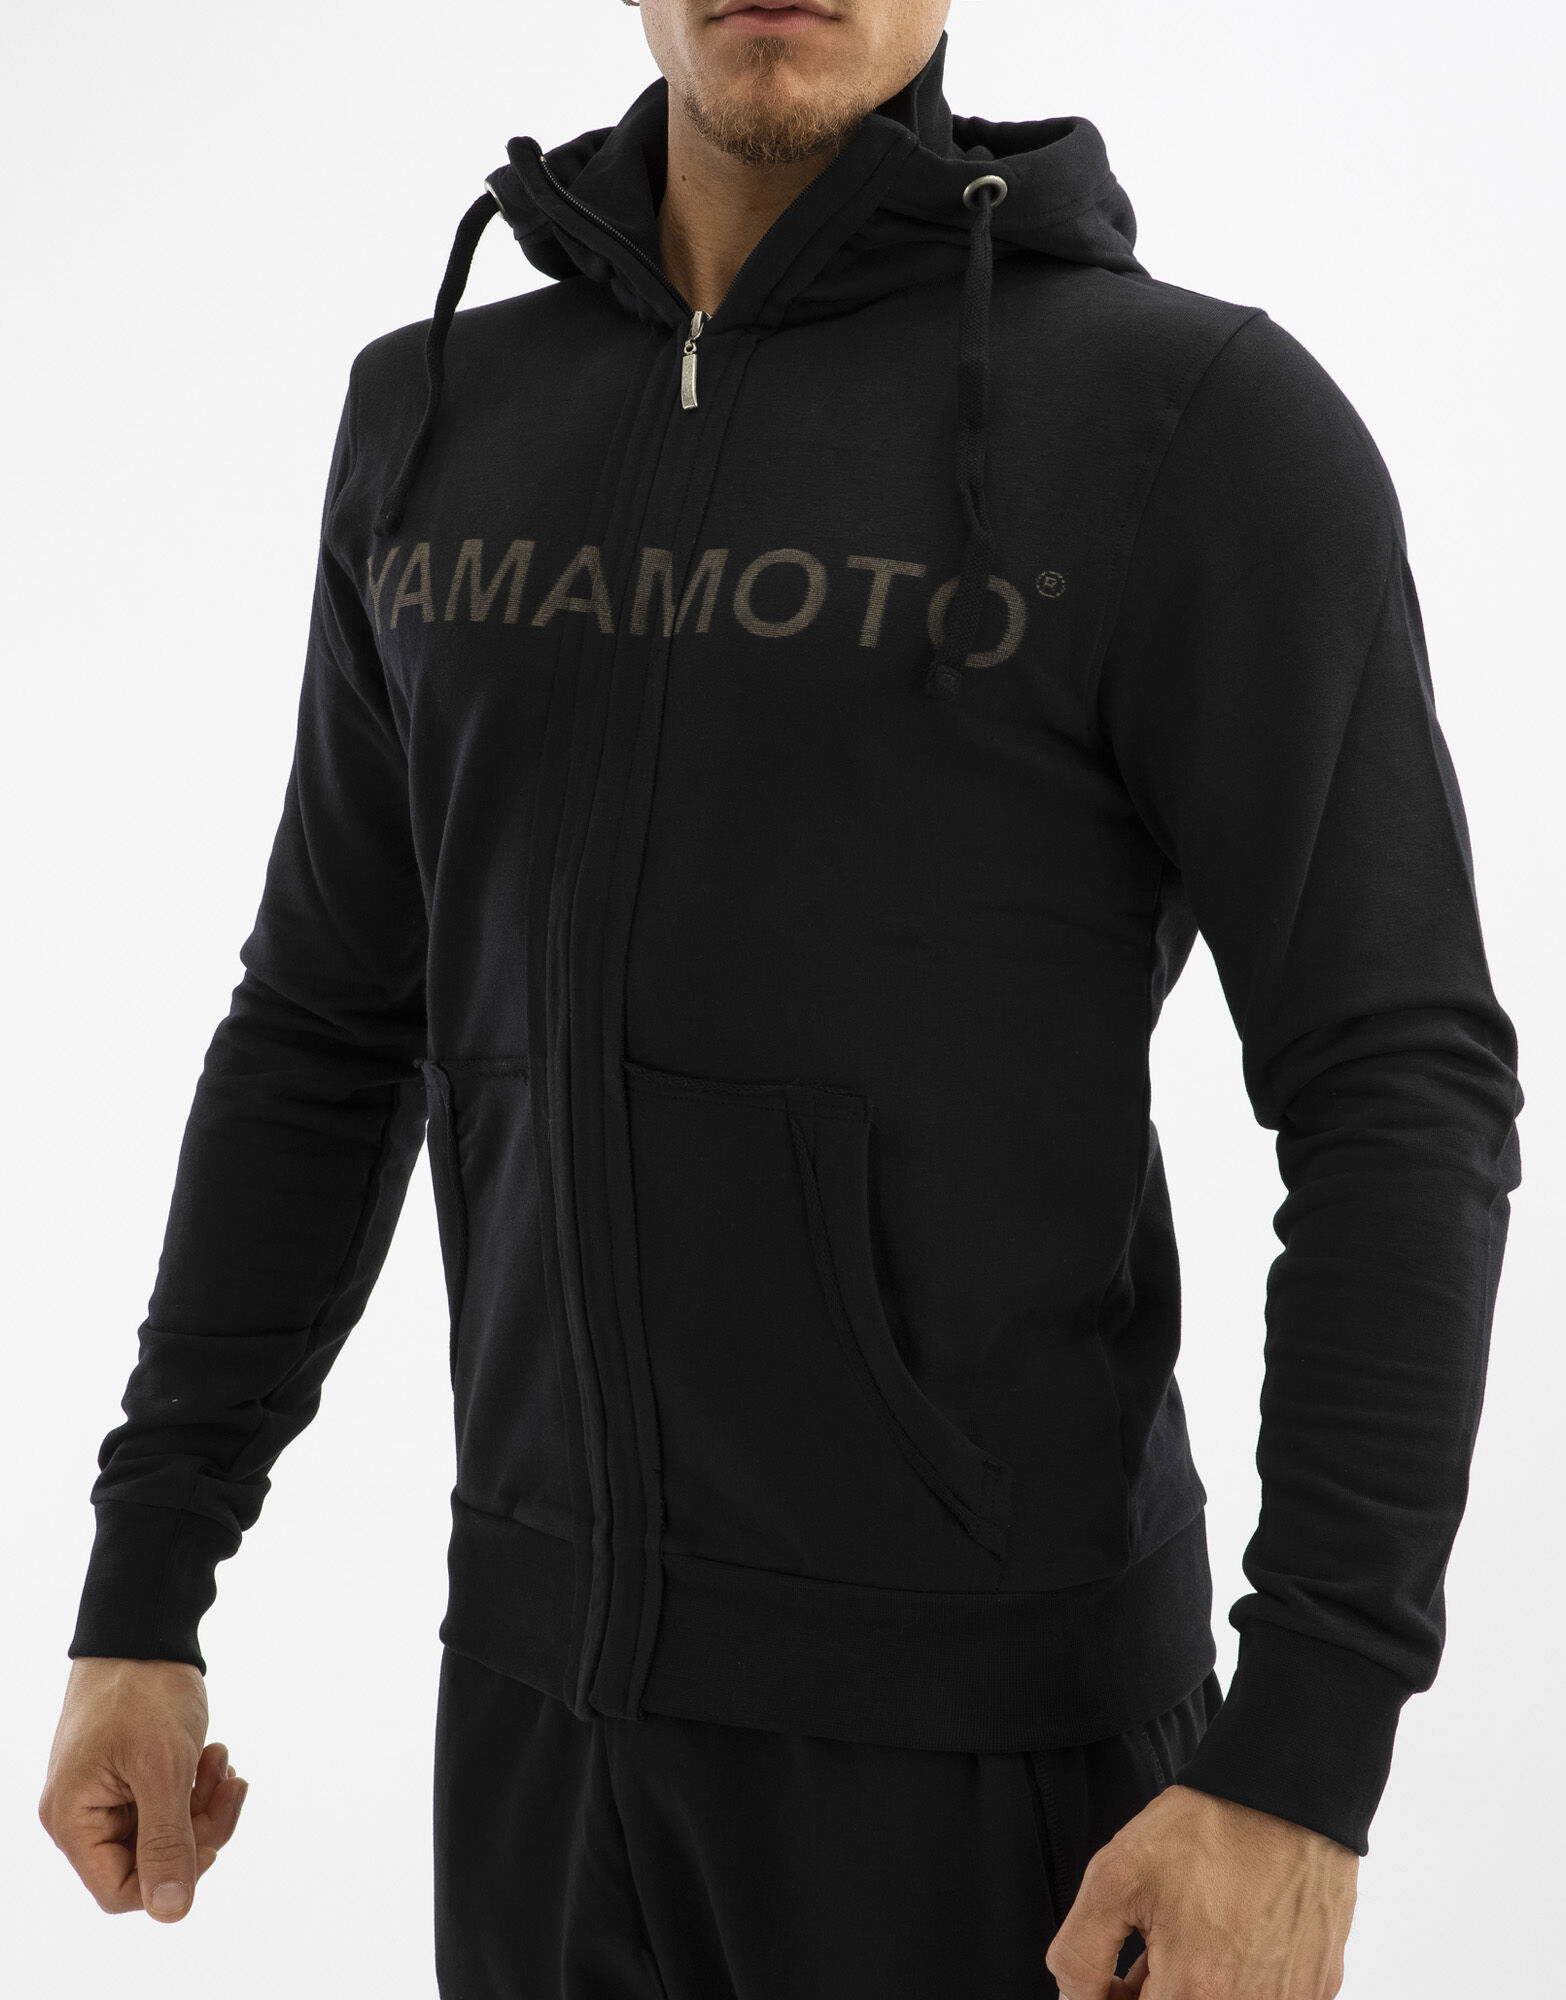 YAMAMOTO OUTFIT Sweatshirt Zip Nero Xxxl